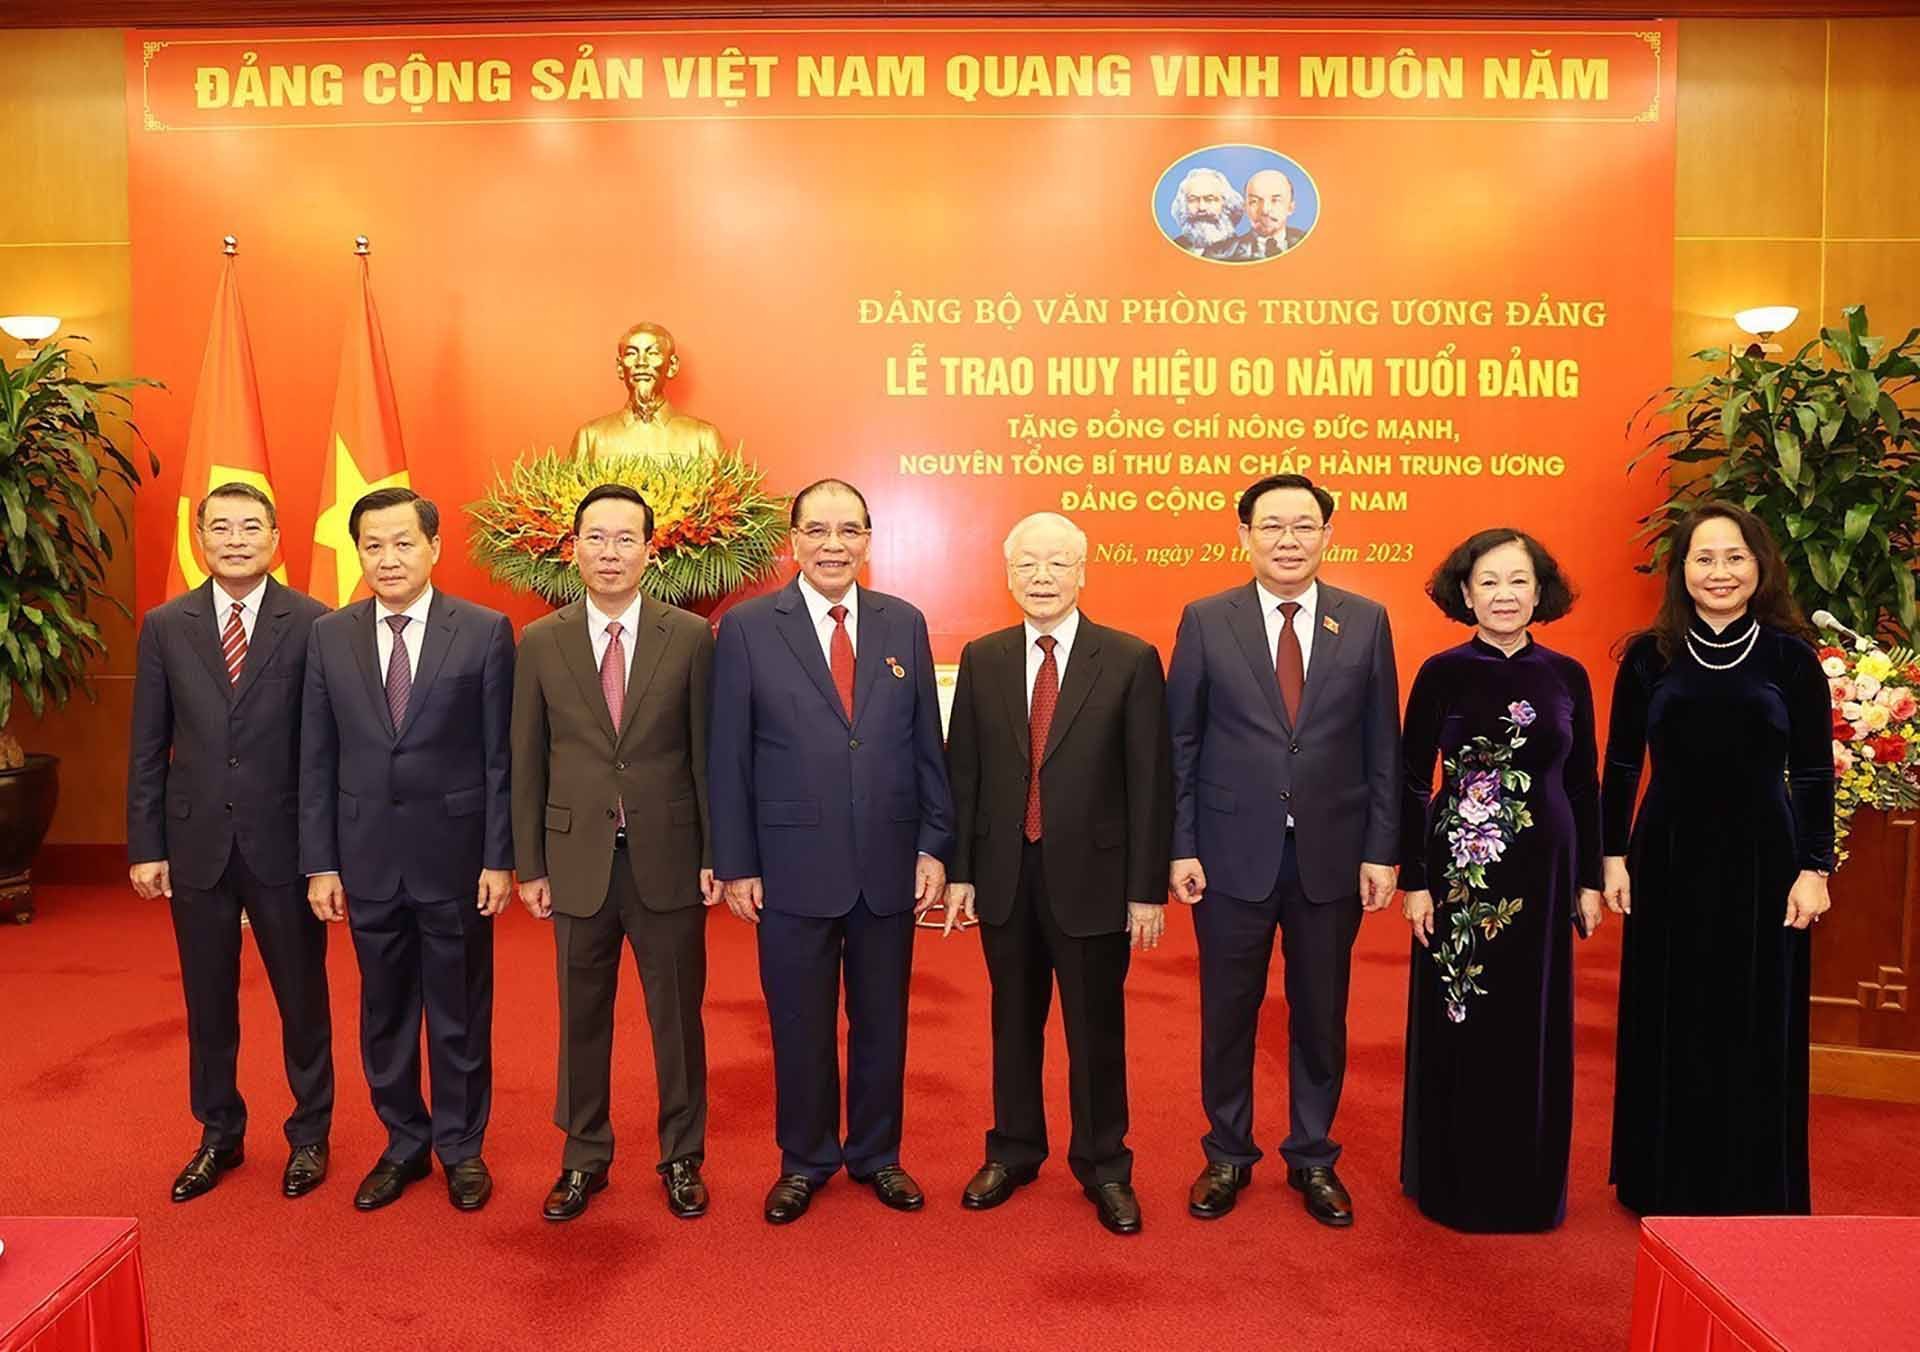 Tổng Bí thư Nguyễn Phú Trọng và nguyên Tổng Bí thư Nông Đức Mạnh cùng các đồng chí lãnh đạo Đảng, Nhà nước. (Nguồn: TTXVN)